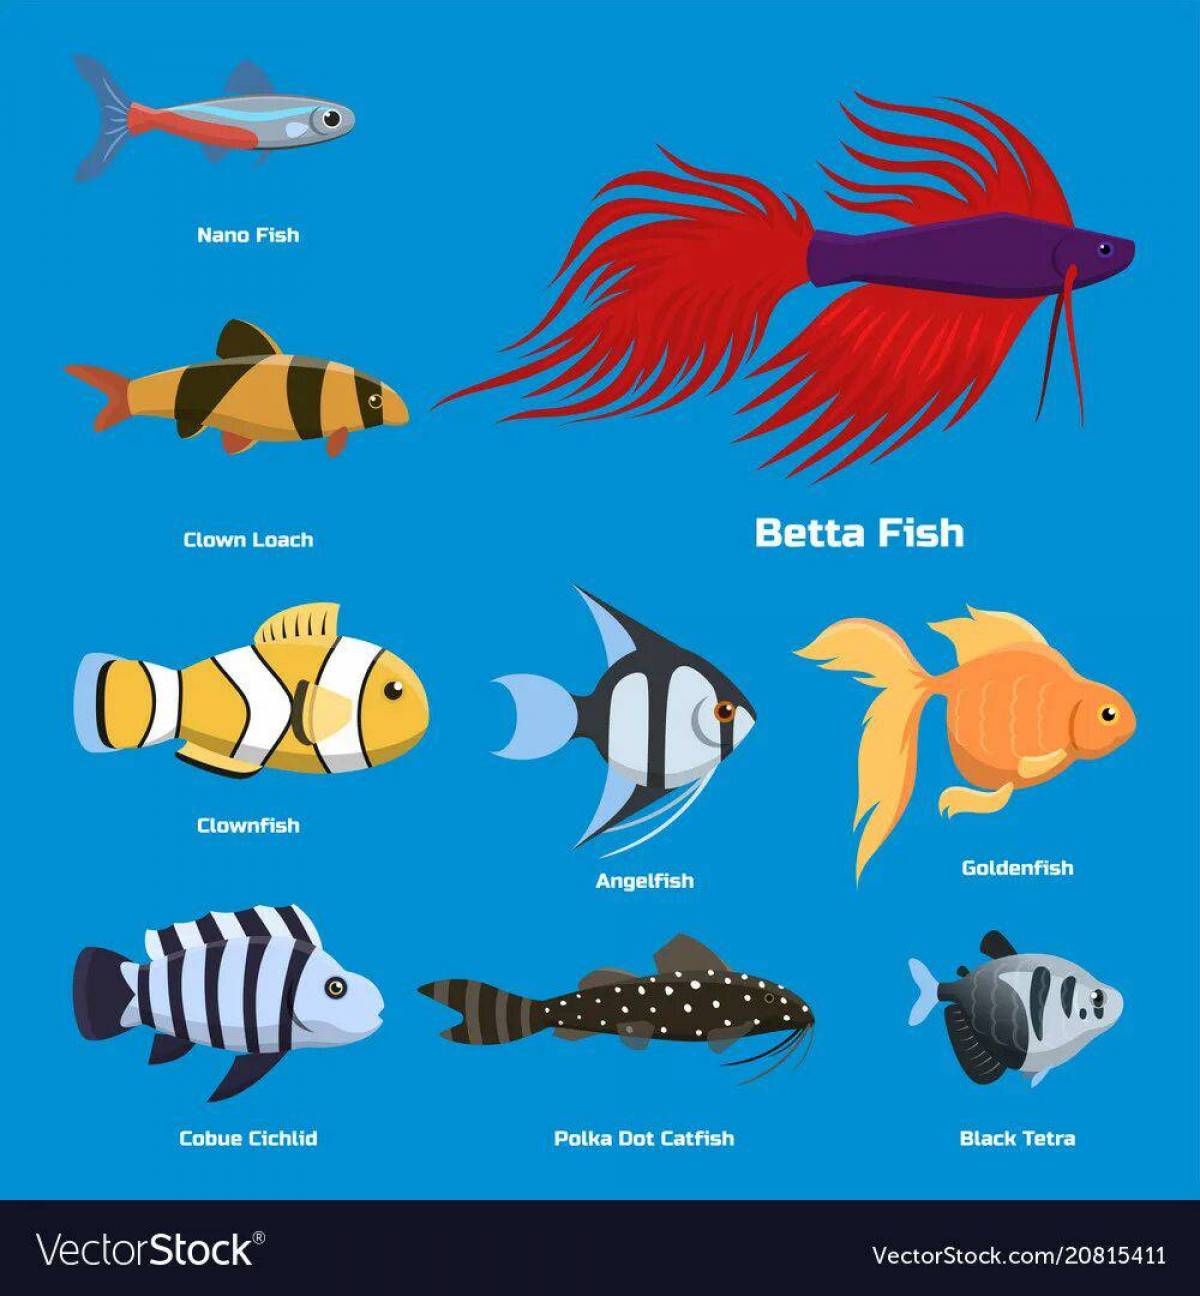 Аквариумные рыбки с названиями для детей #22